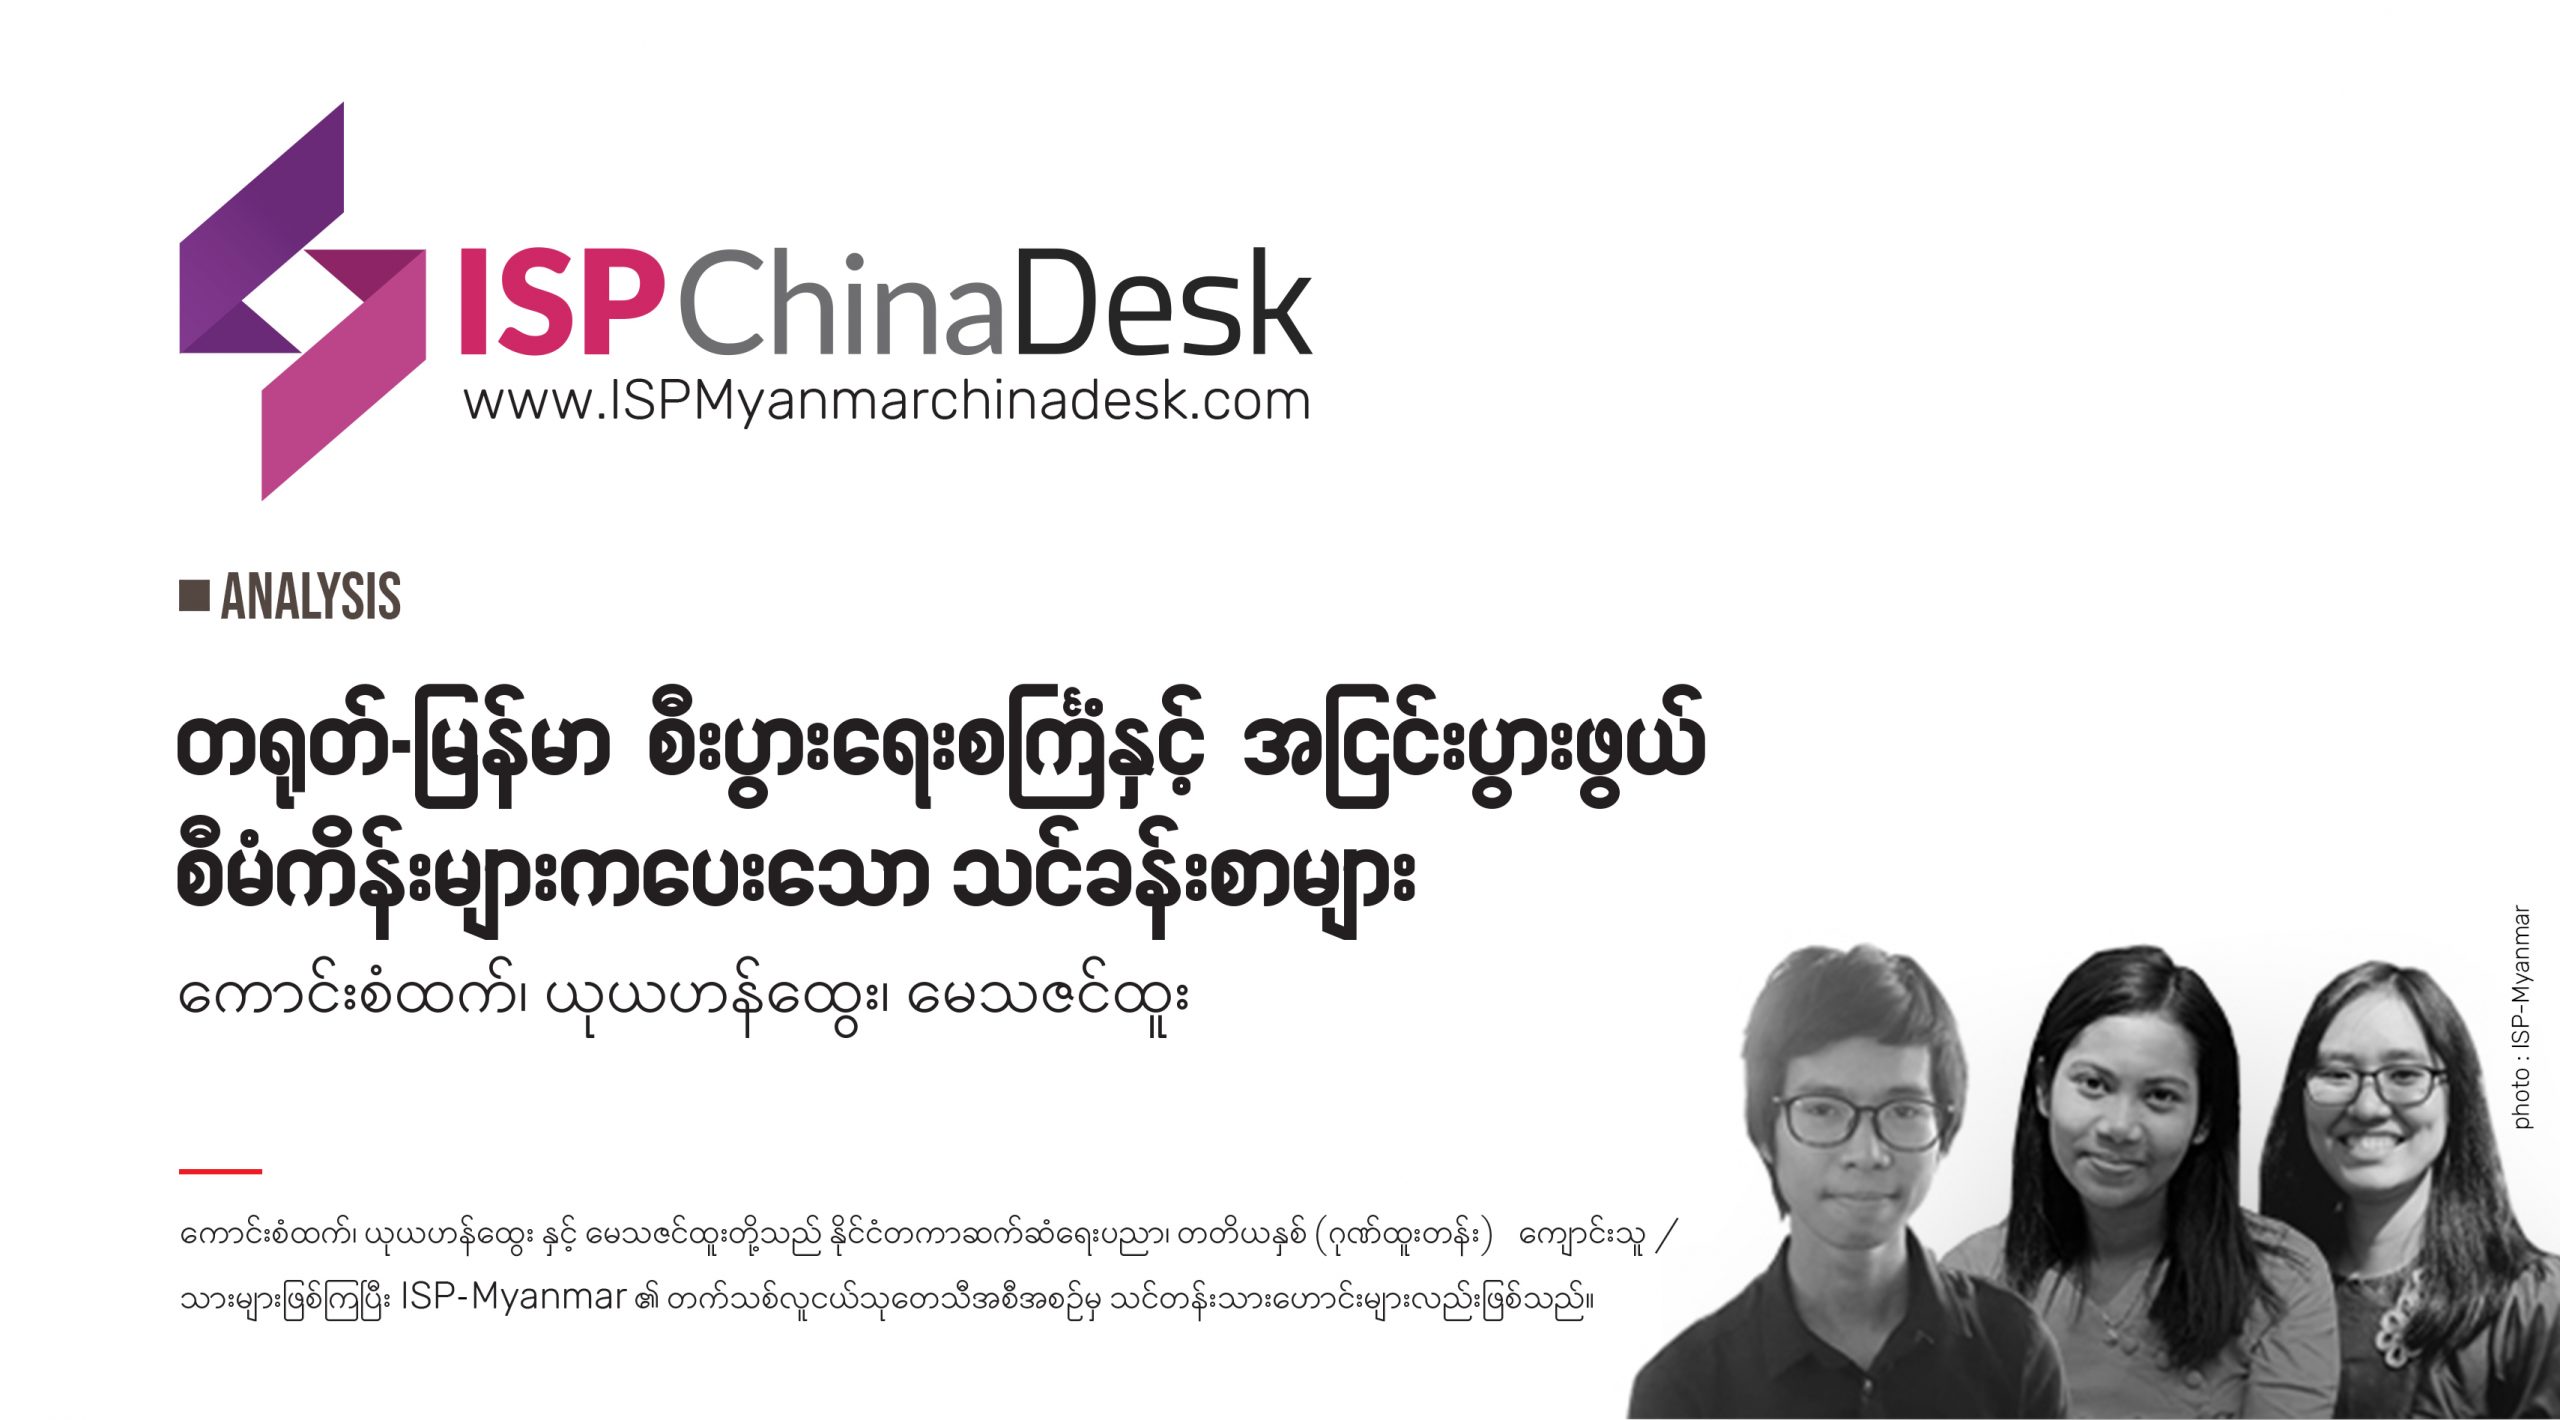 တရုတ်-မြန်မာ စီးပွားရေးစင်္ကြံနှင့် အငြင်းပွားဖွယ်စီမံကိန်းများကပေးသော သင်ခန်းစာများ